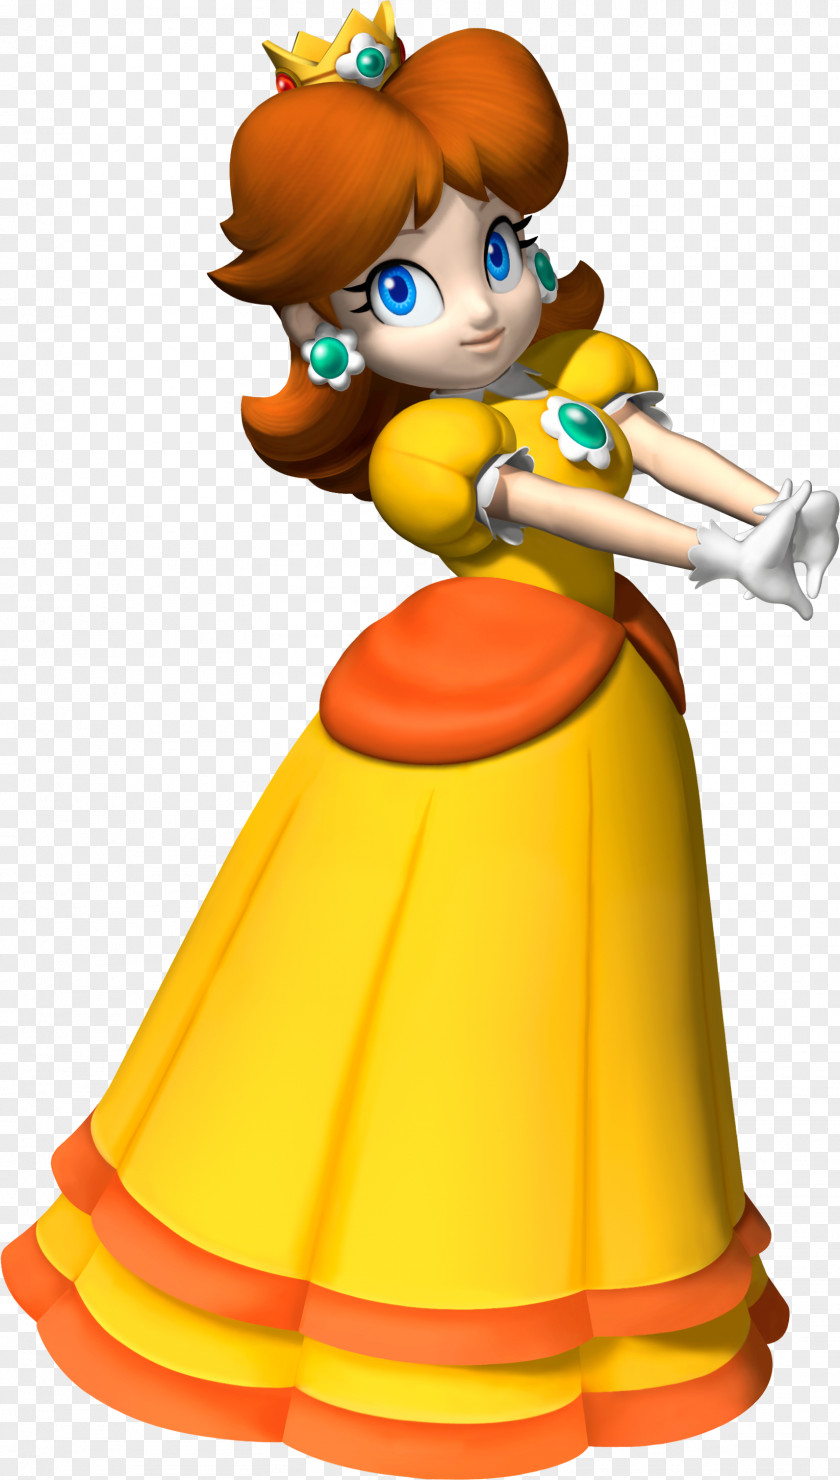 Peach Princess Daisy Mario Bros. Luigi PNG